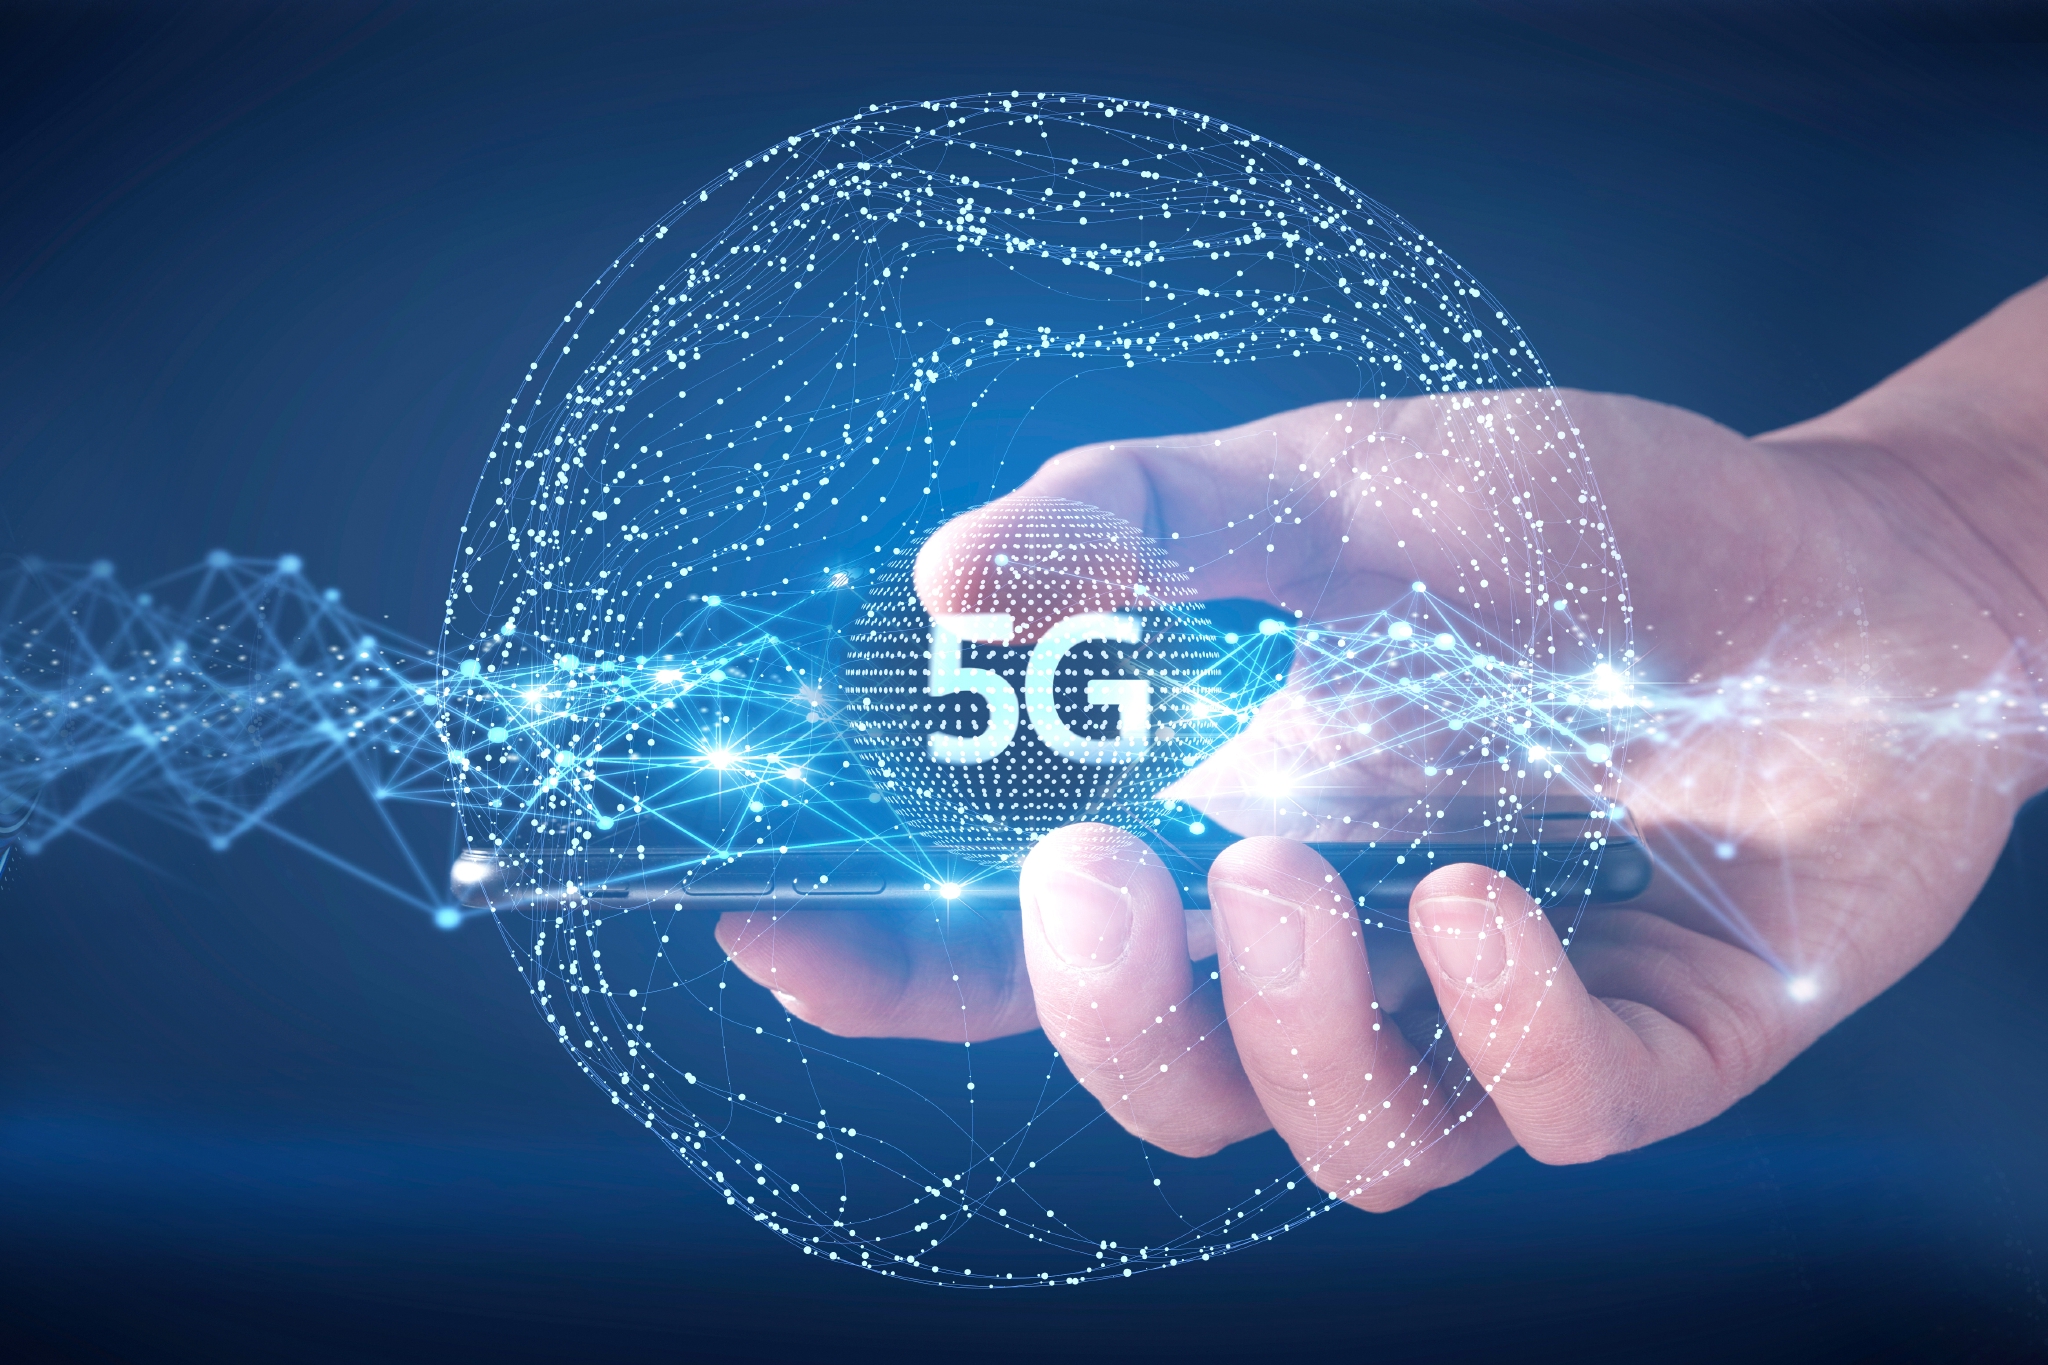 华为宣布5G合作新进展：5G基站发货量超4万，拿下超30家运营商合同_凤凰网